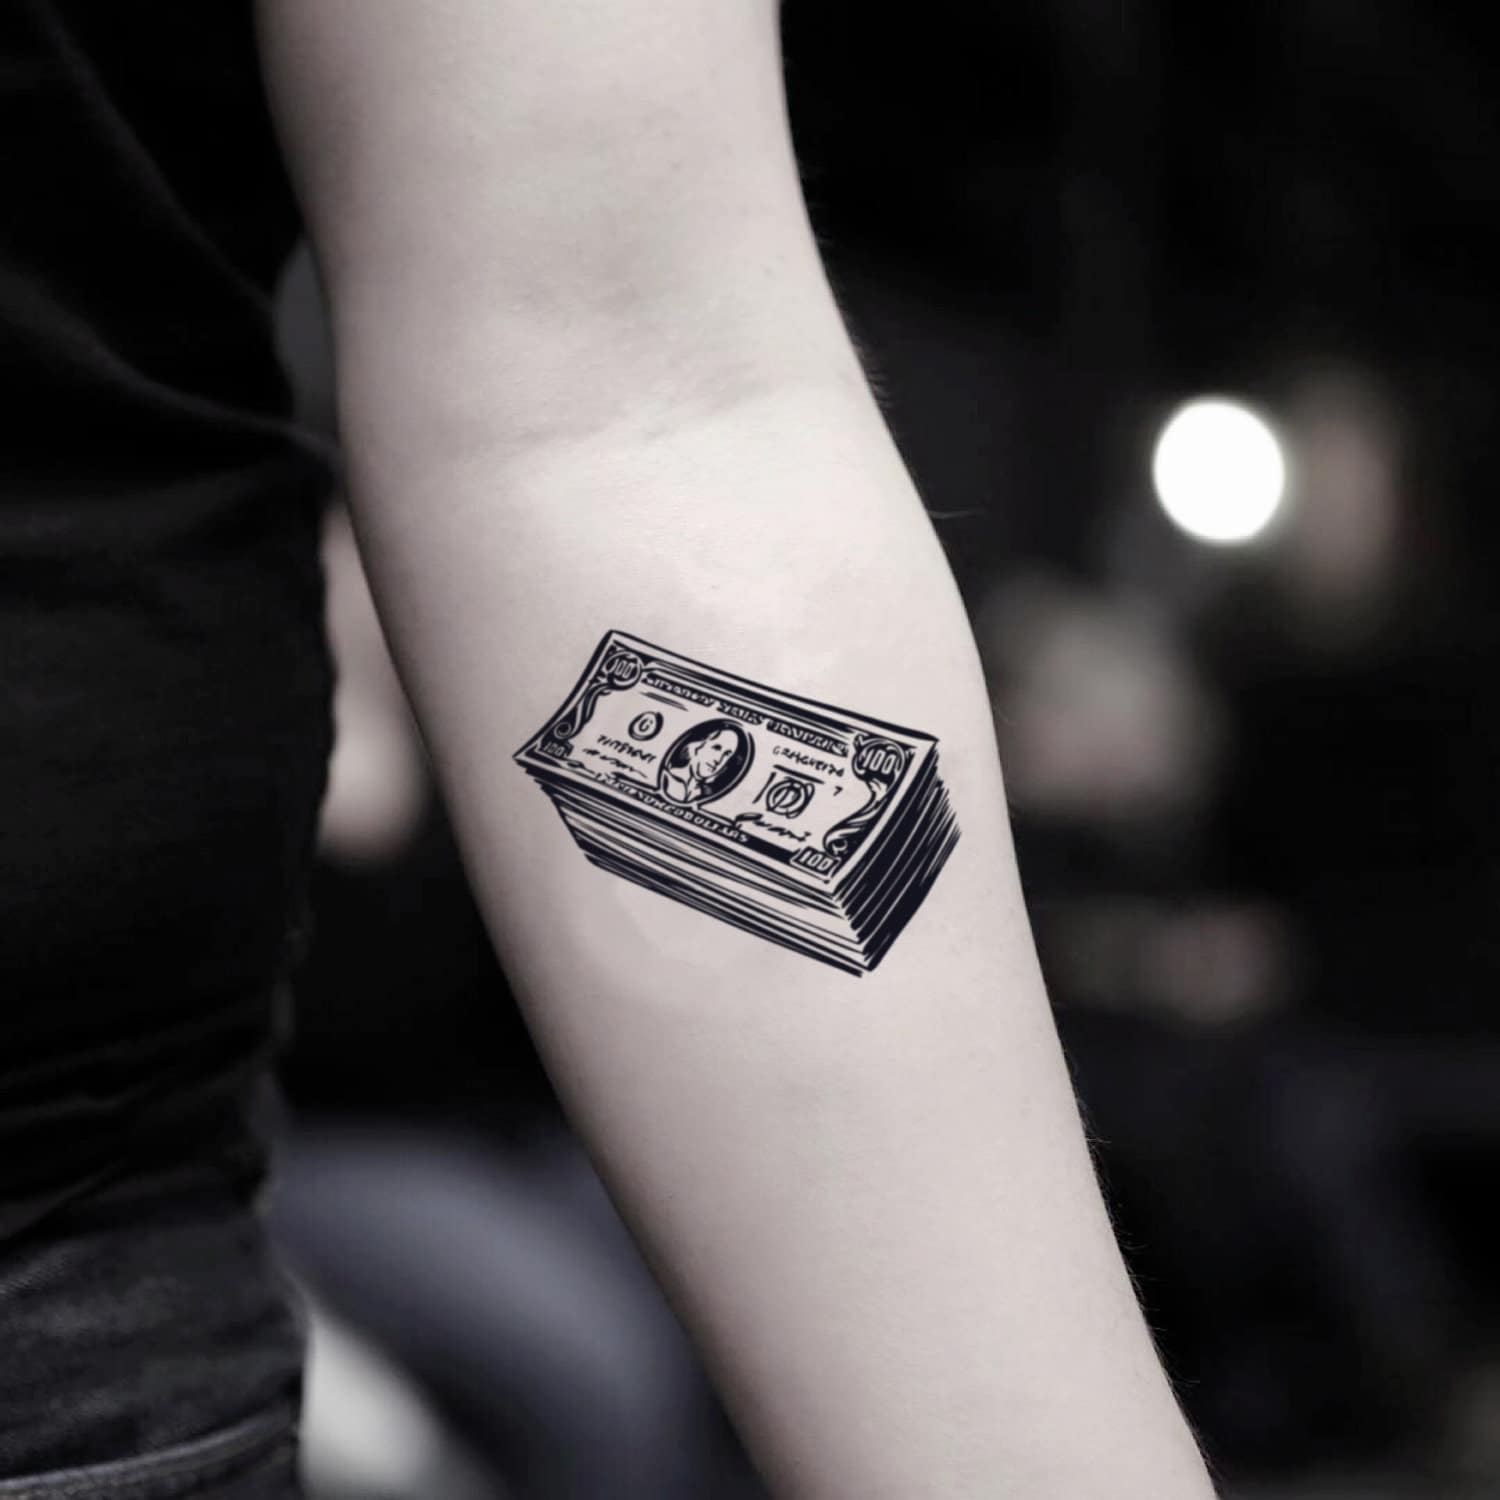 hundred-dollar-bill-temporary-fake-tattoo-sticker-set-of-2-etsy